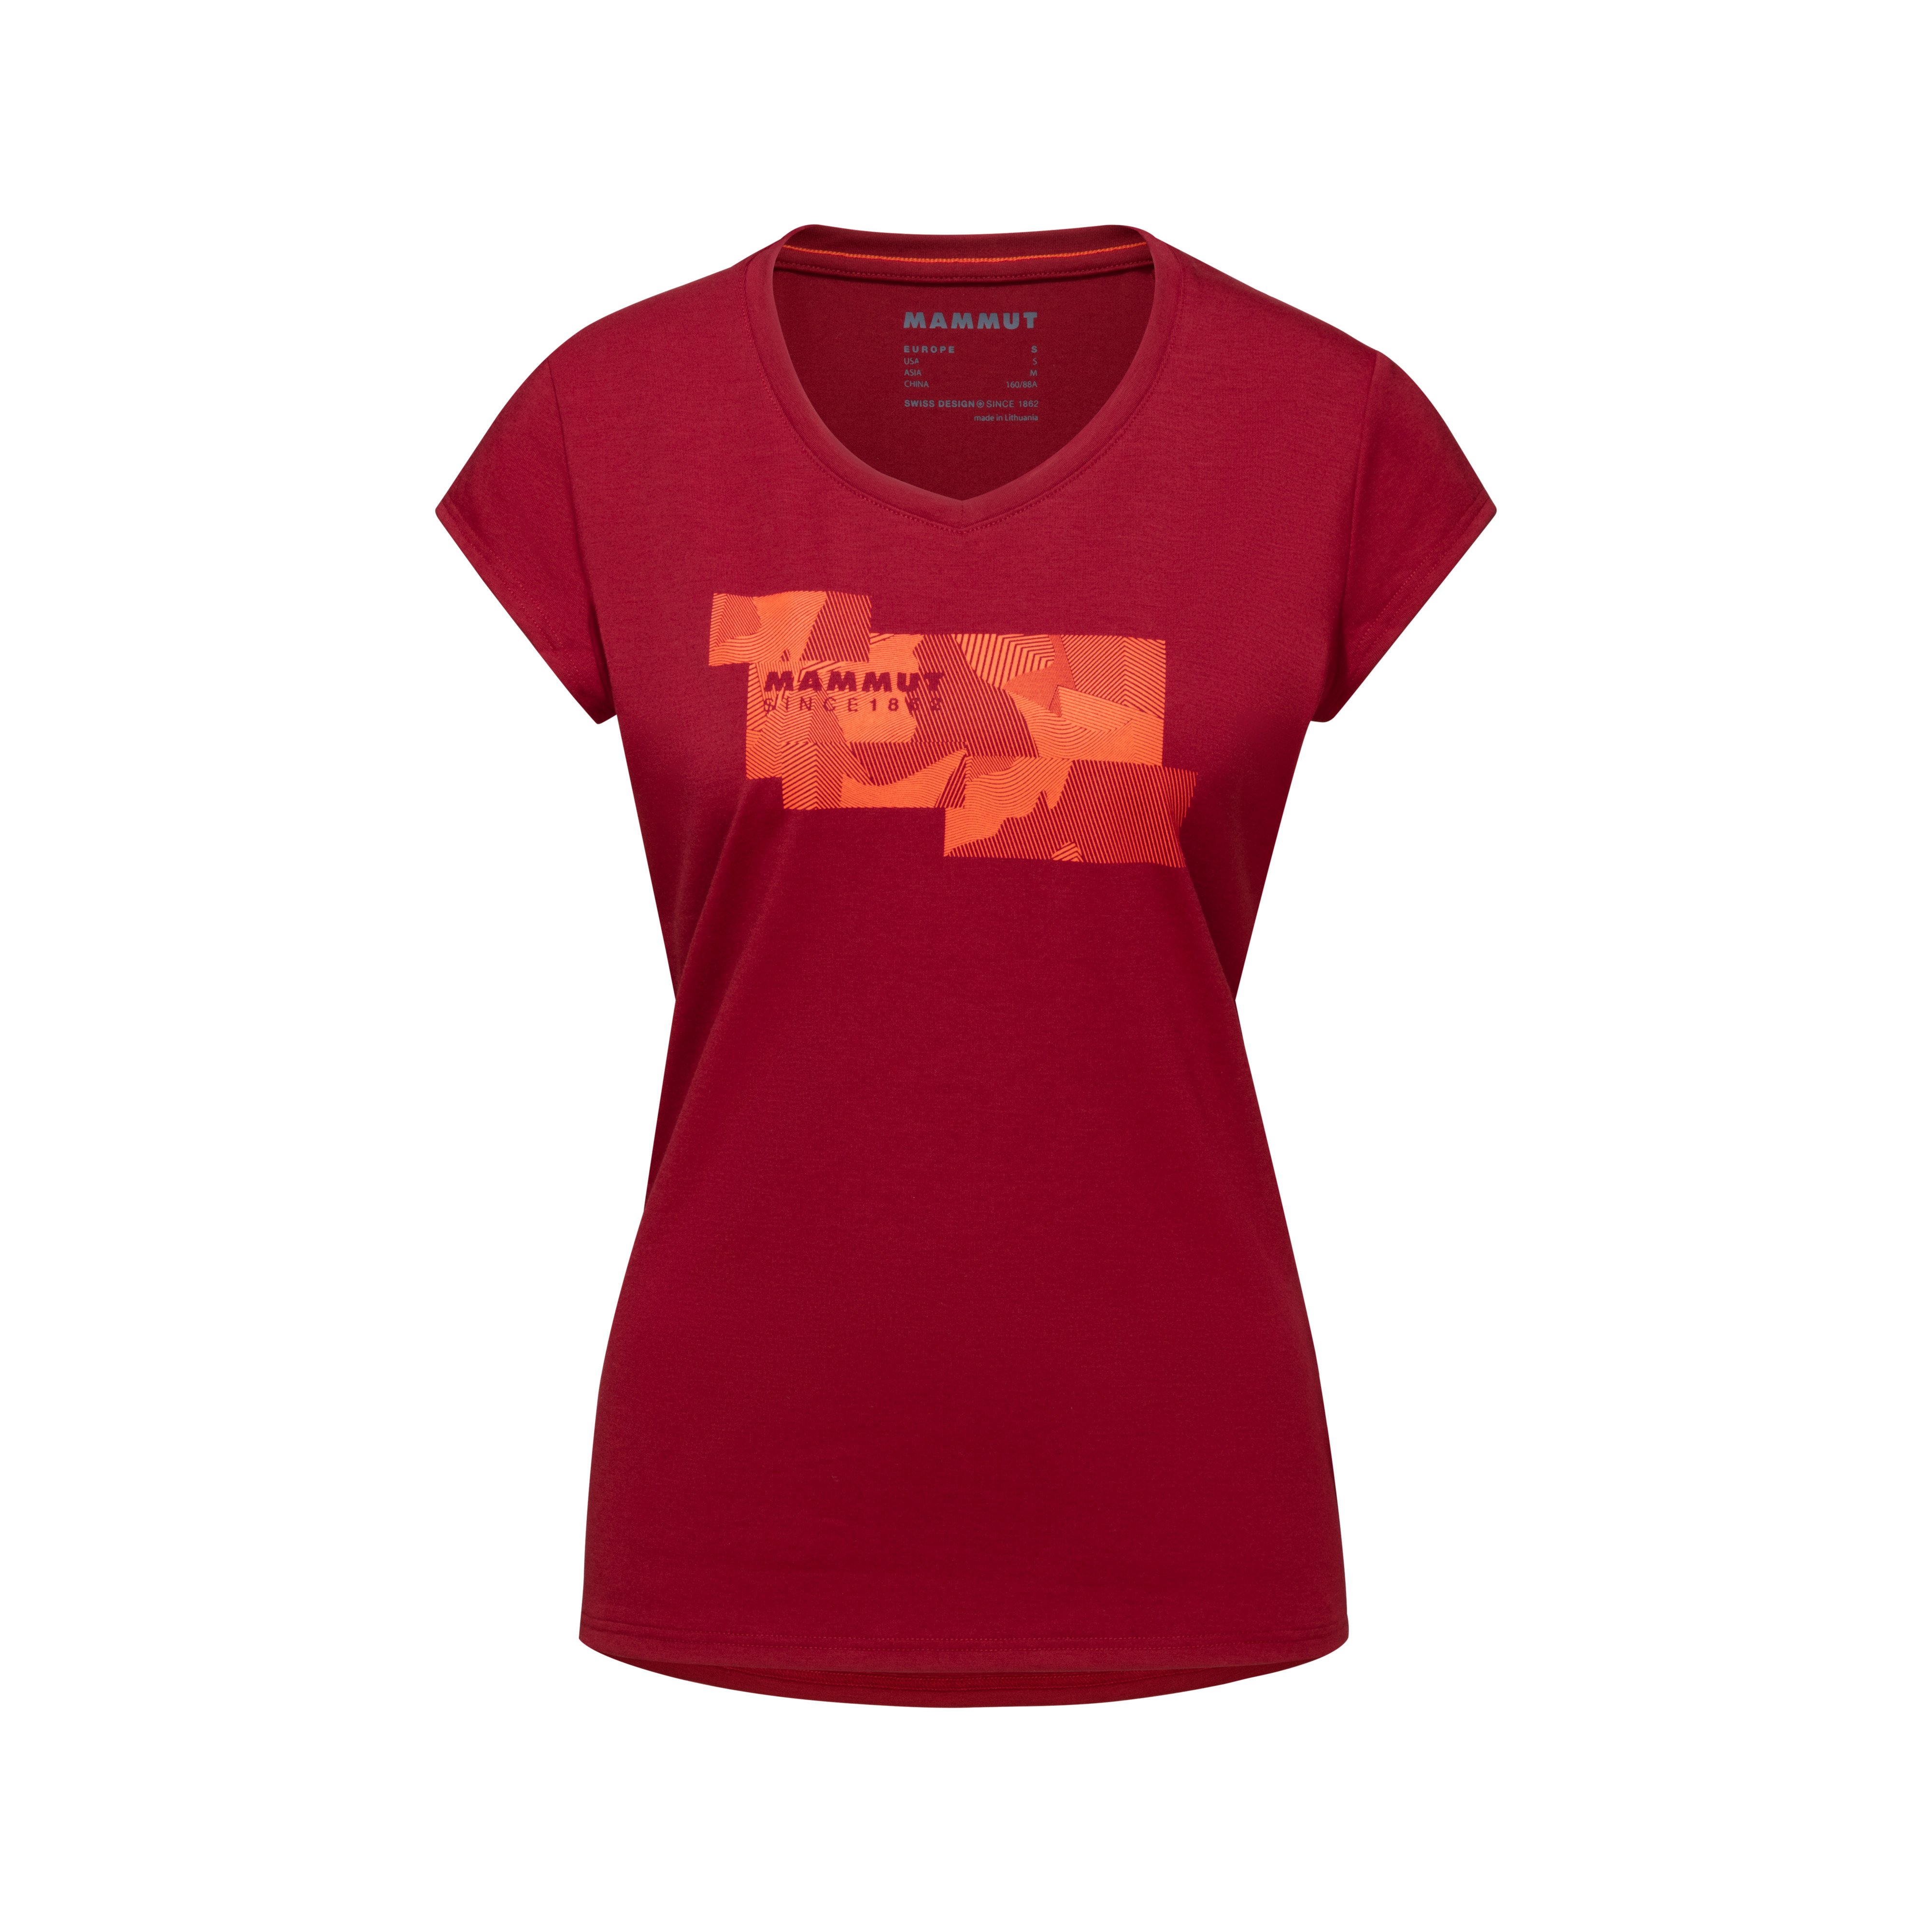 Trovat T-Shirt Women - blood red, XS thumbnail